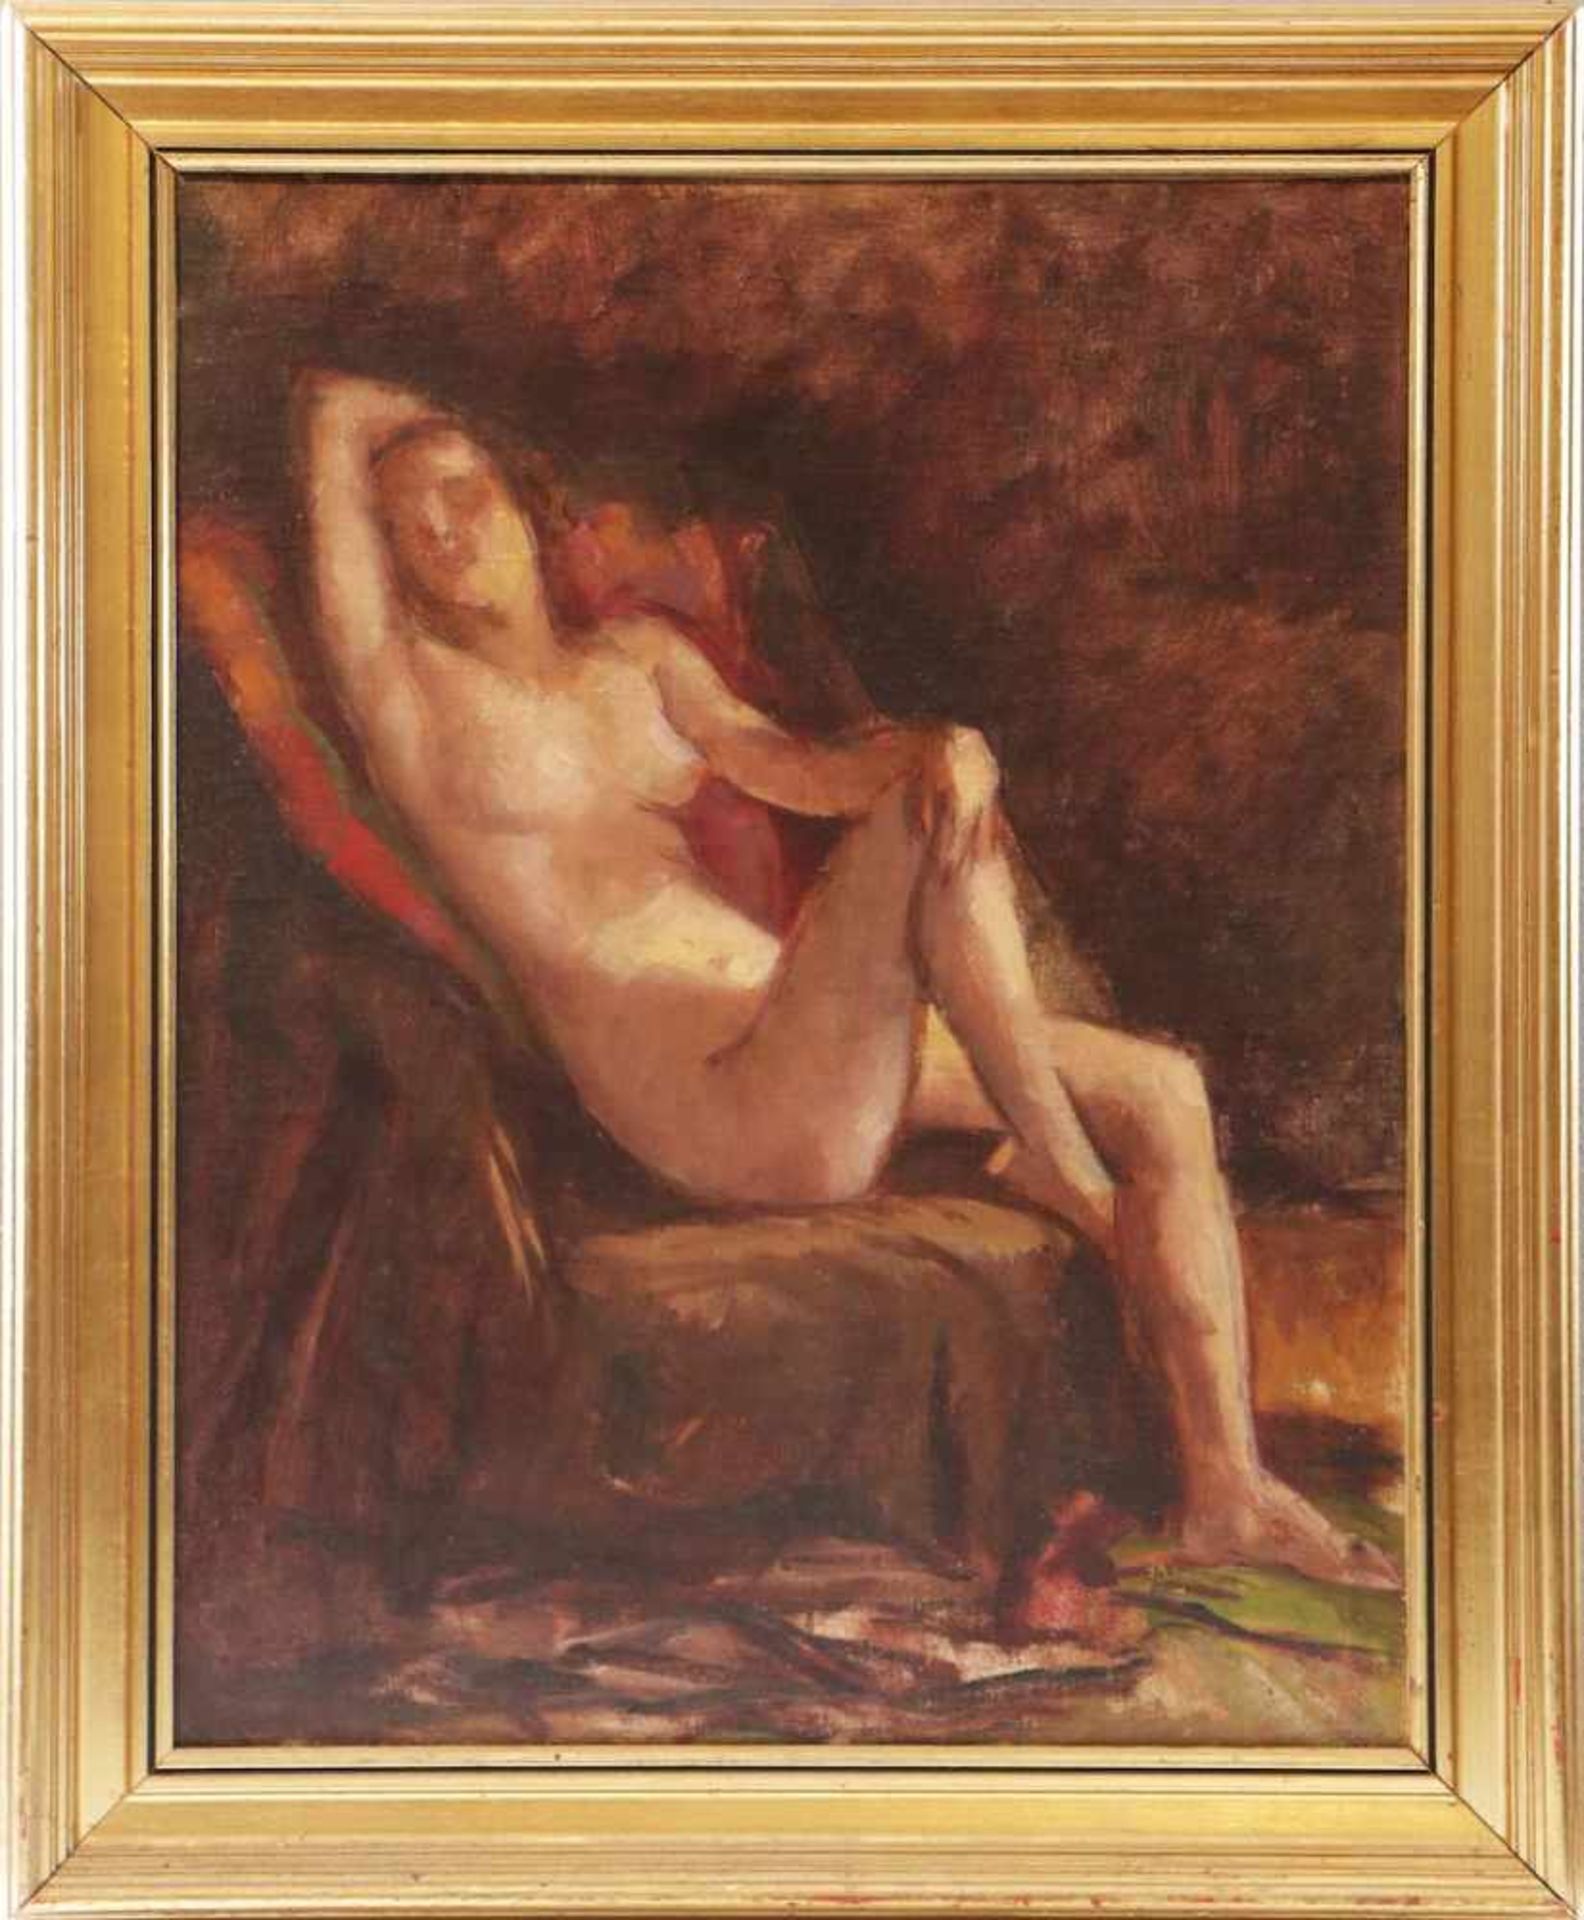 EDITH BASCH (1895 Budapest/Ungarn - 1980)Öl auf Leinwand, ¨Sitzender weiblicher Akt (Studie)¨,